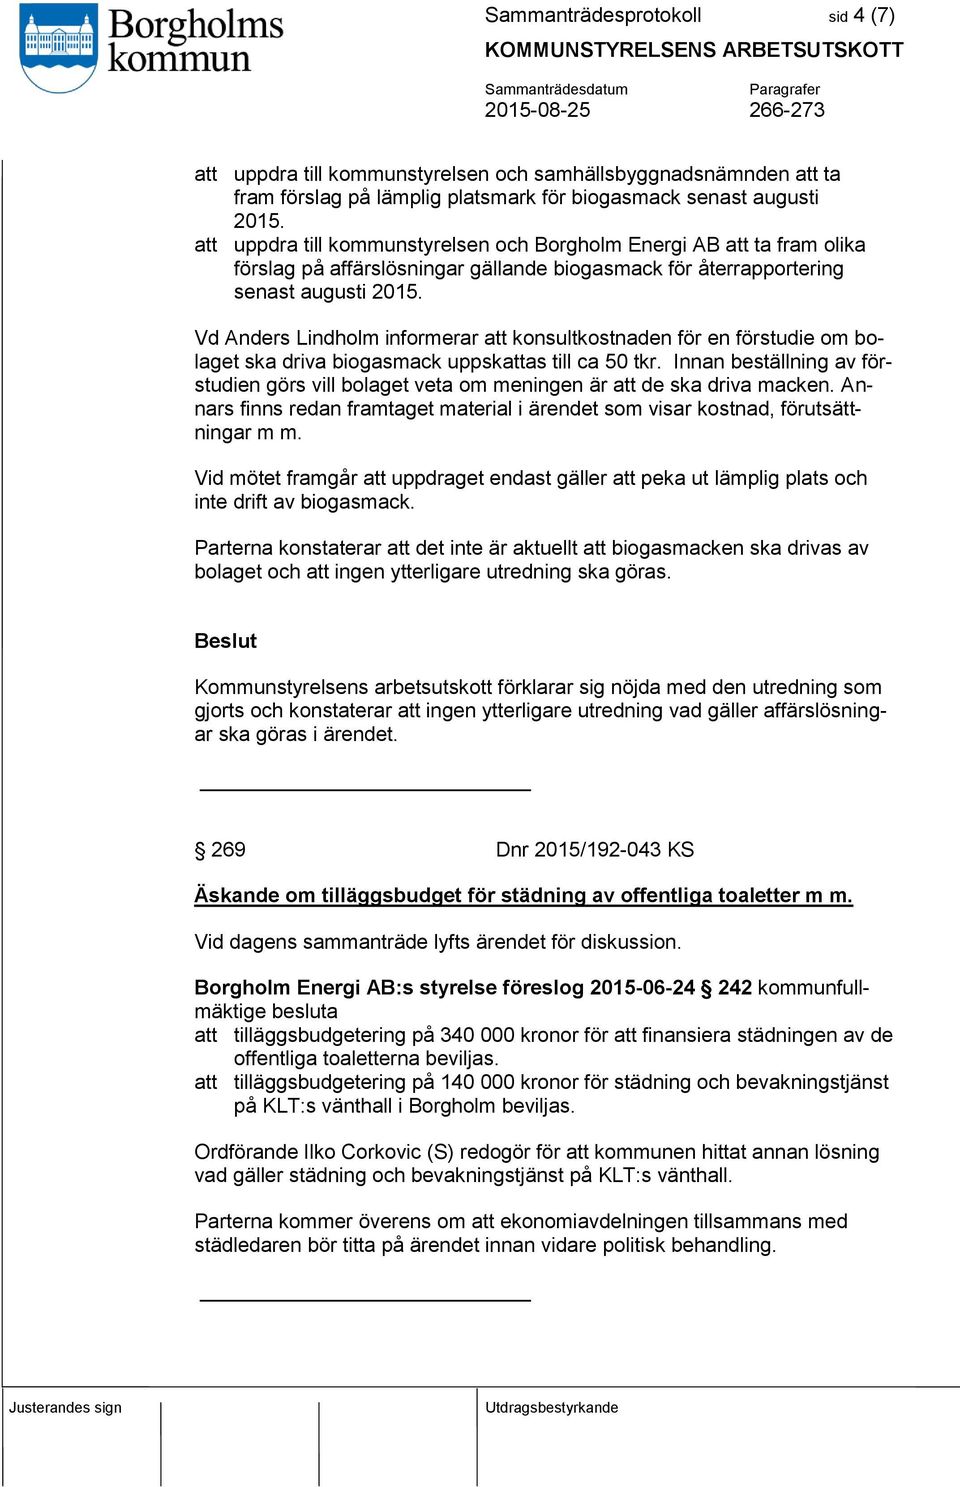 Vd Anders Lindholm informerar att konsultkostnaden för en förstudie om bolaget ska driva biogasmack uppskattas till ca 50 tkr.